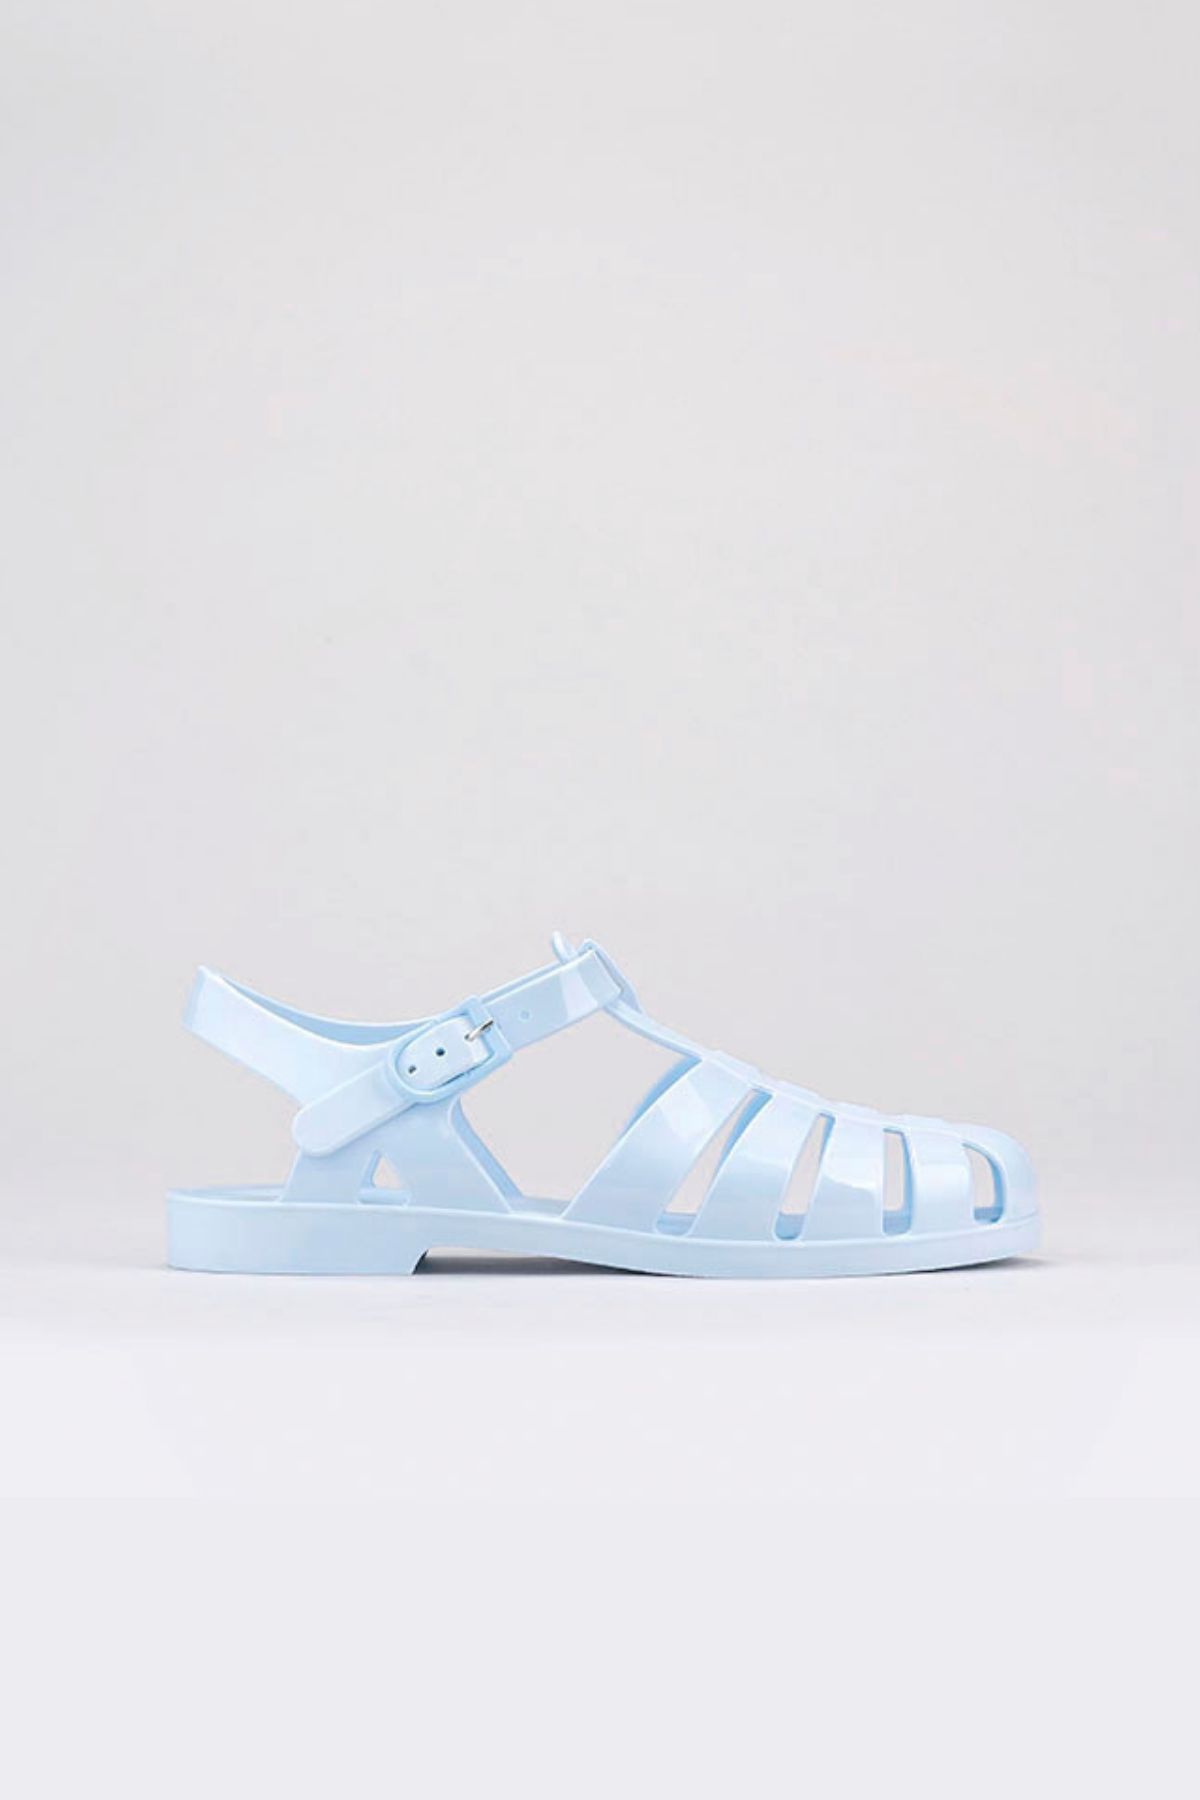 Igor Biarritz Brillo Kadın Mavi Sandalet S10258-006